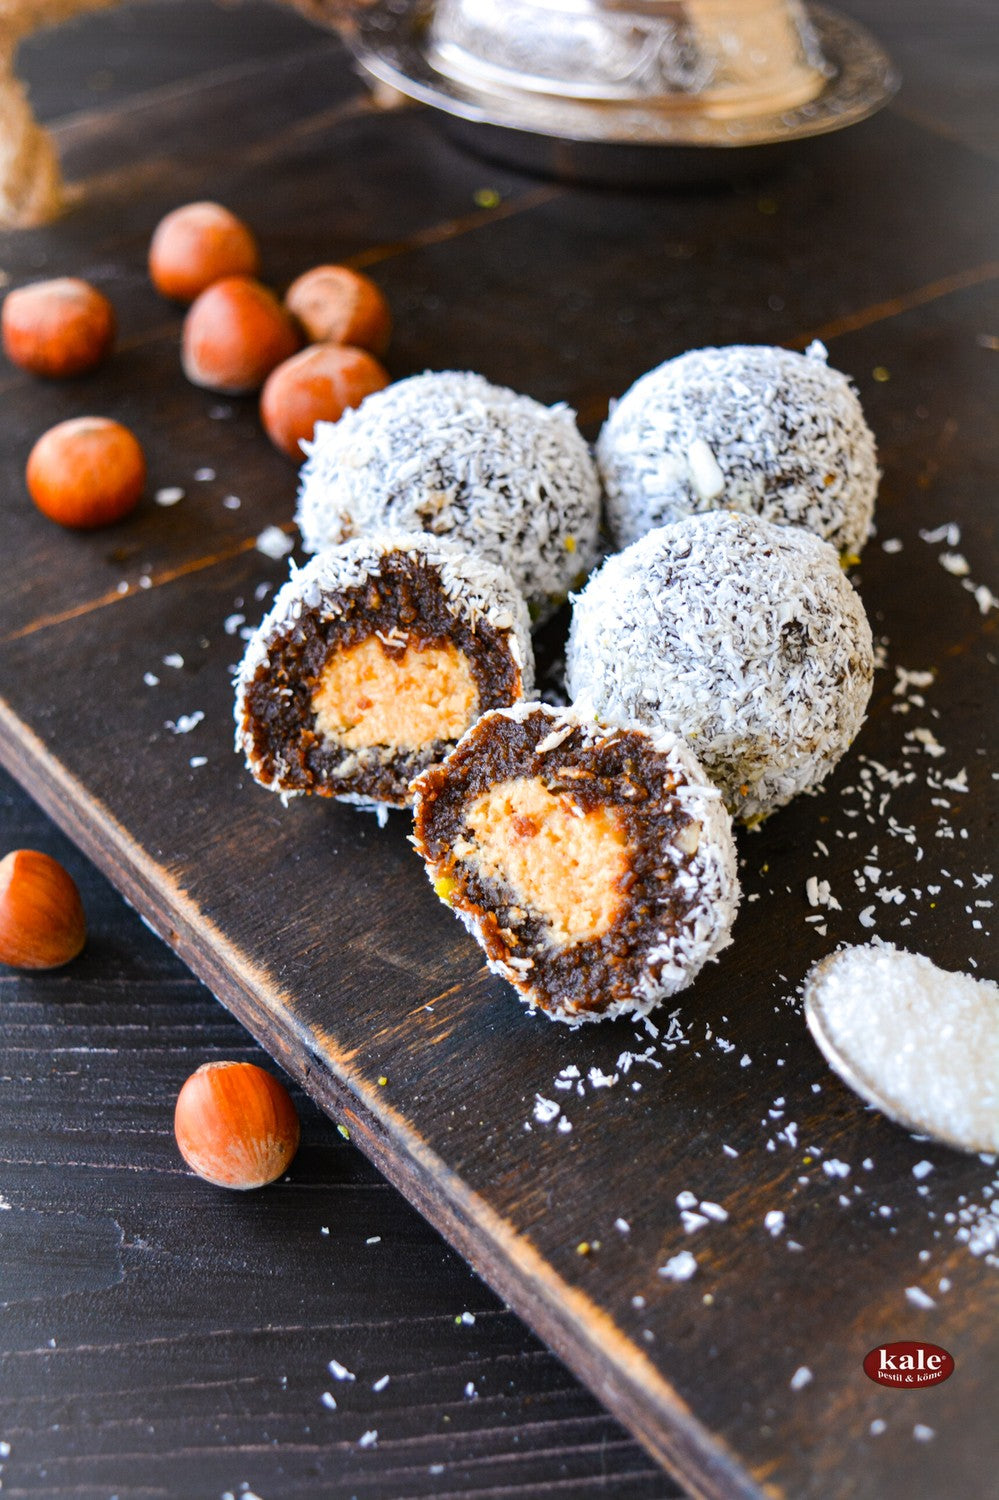 حلوى Coconut Choco Pestil التركية من KALE بوزن 1 كيلو جرام